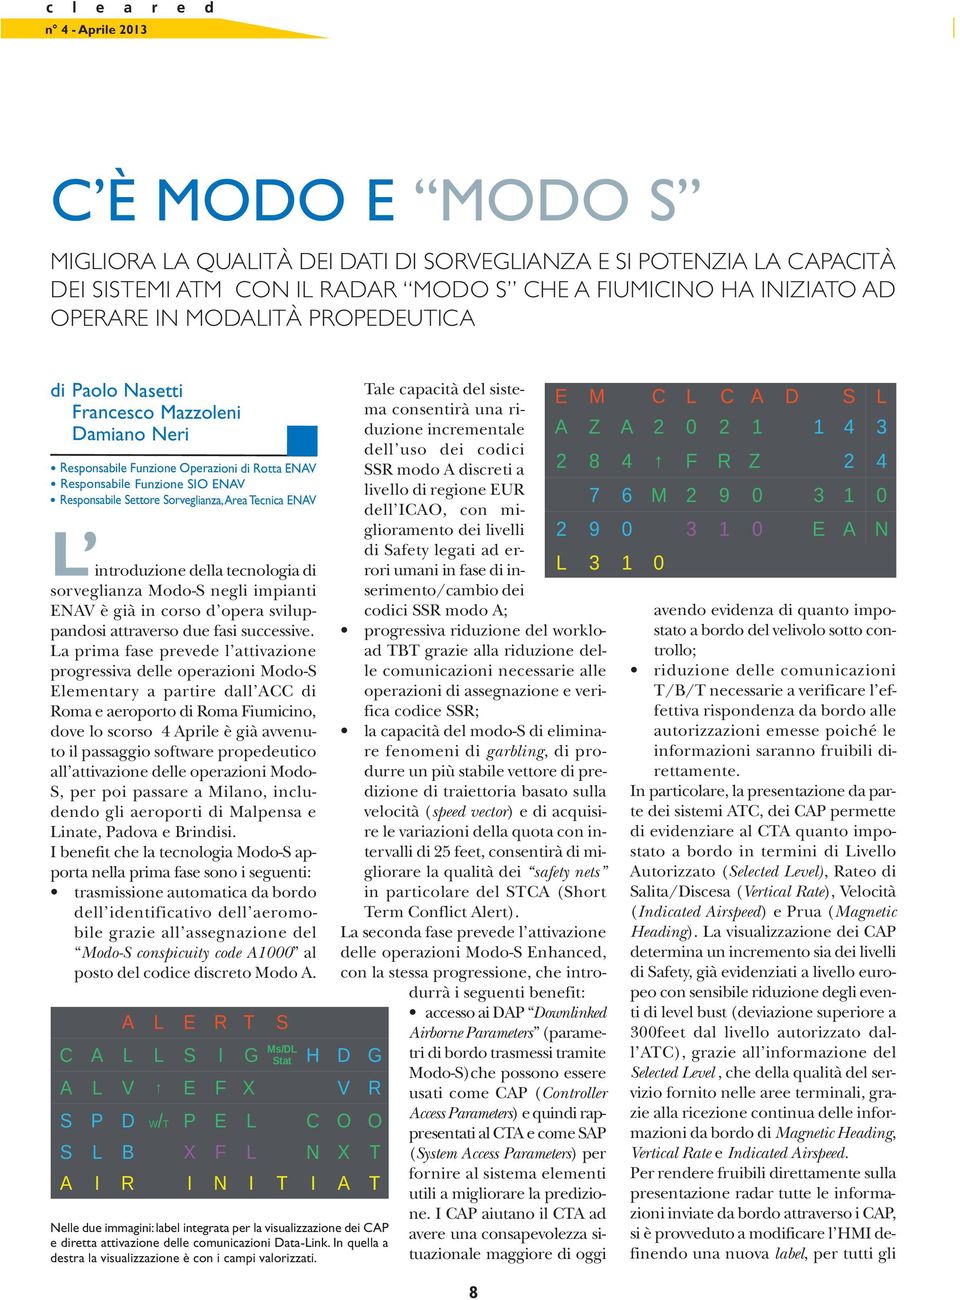 tecnologia di sorveglianza Modo-S negli impianti ENAV è già in corso d opera sviluppandosi attraverso due fasi successive.